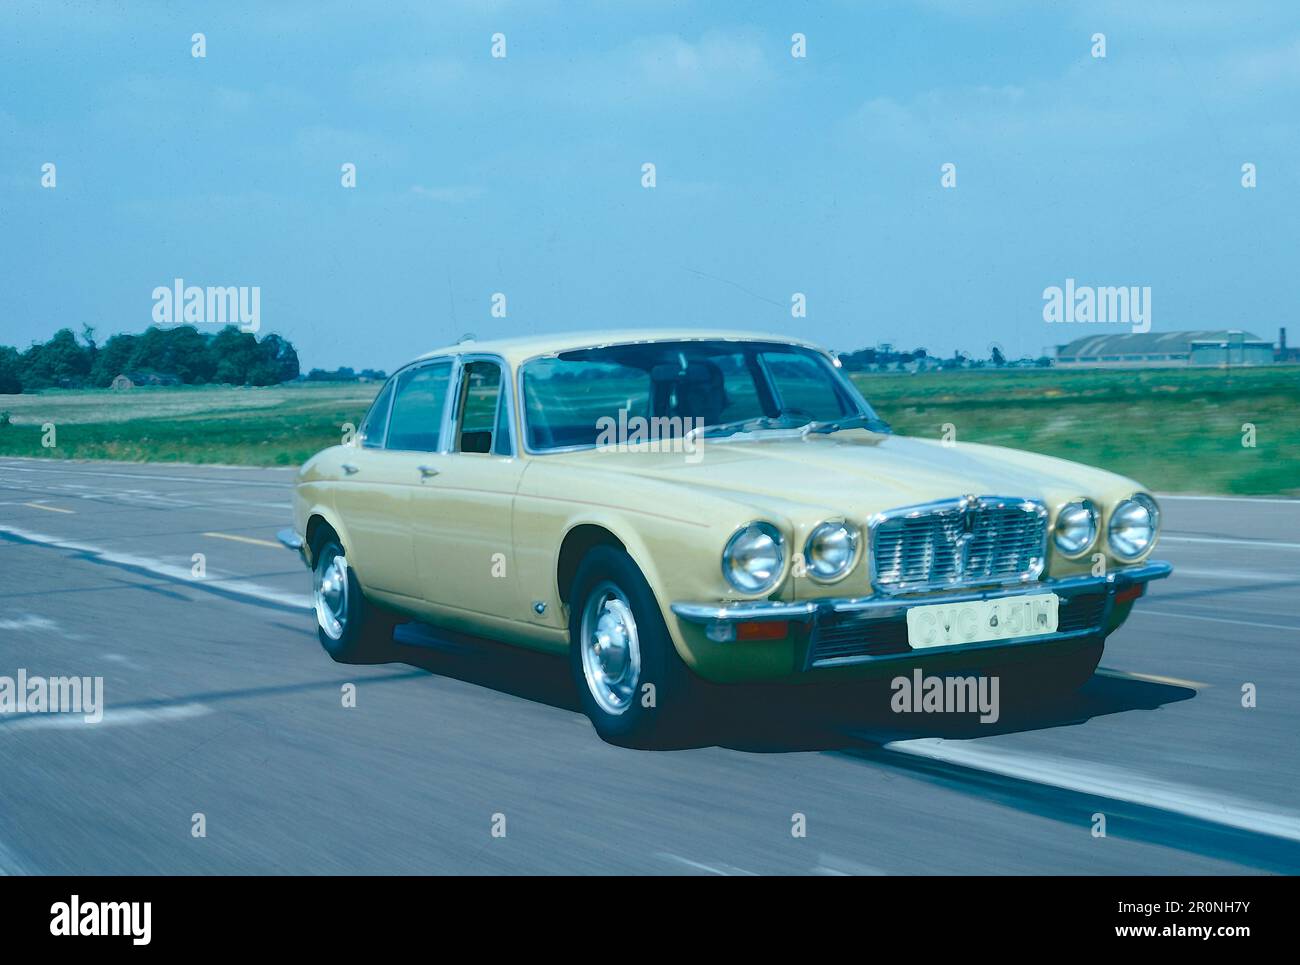 Jaguar modèle XJ 6 série II, Royaume-Uni 1976 Banque D'Images